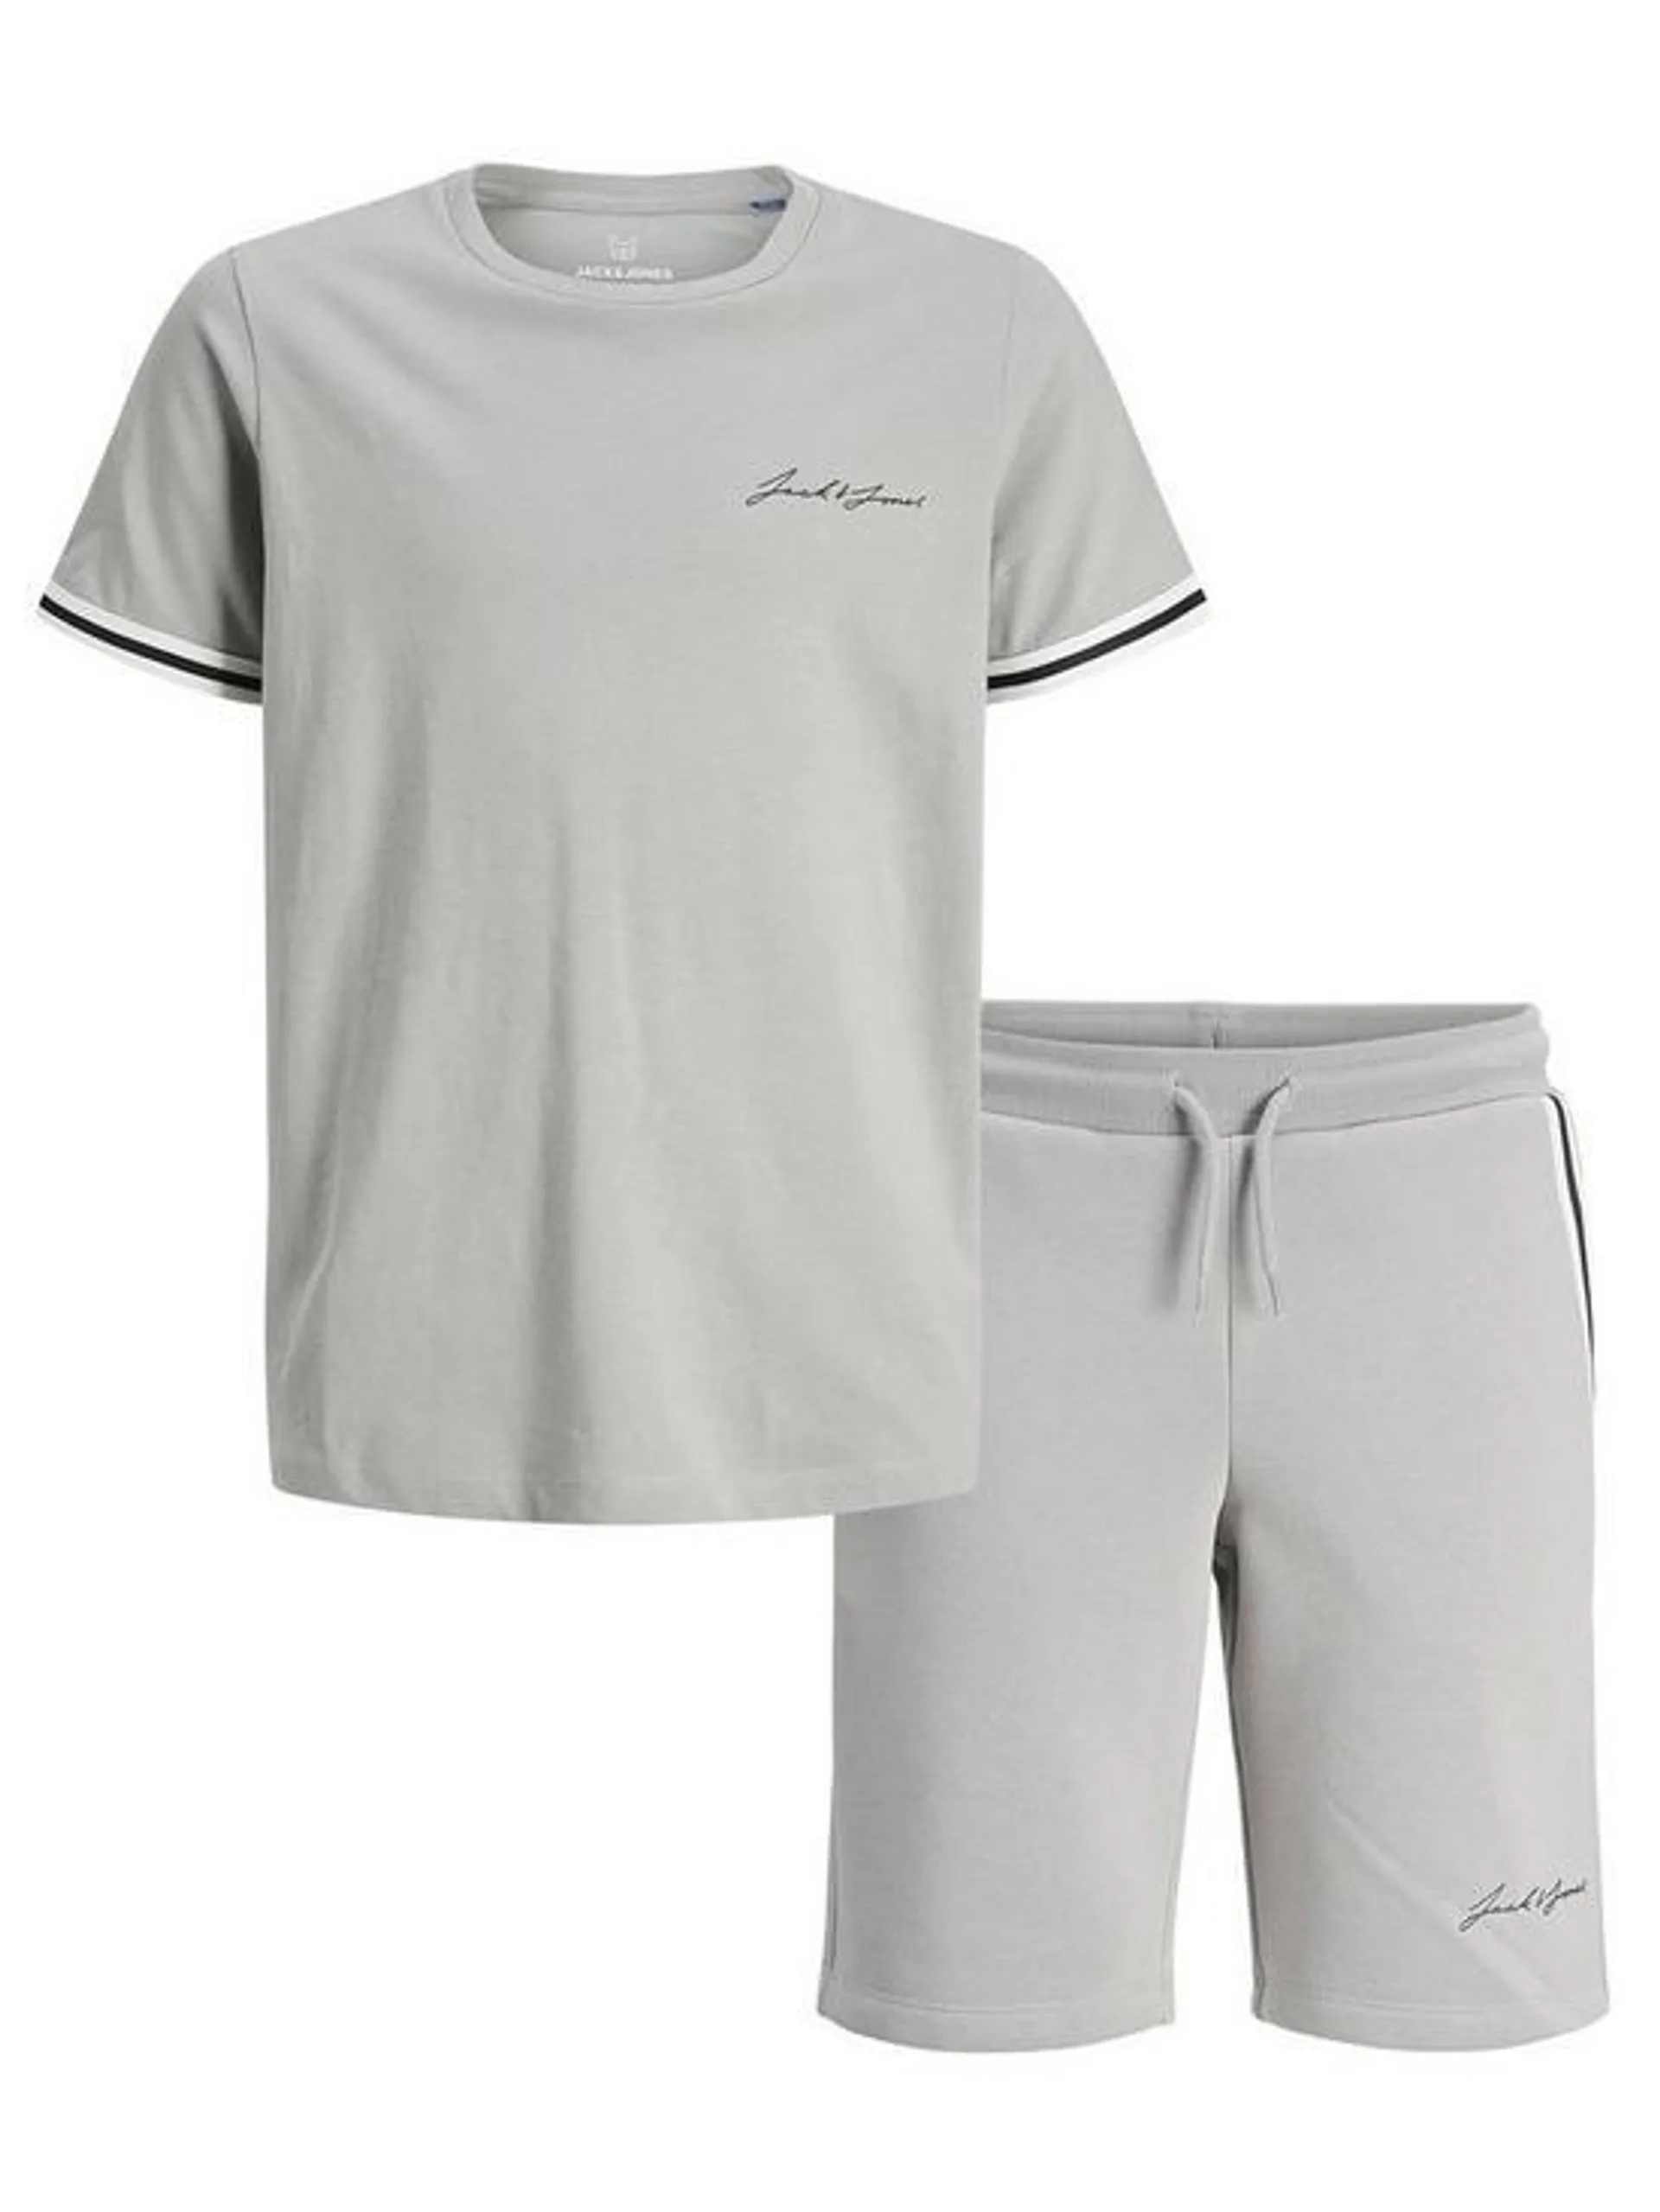 Boys Jaxon T-shirt And Short Set - Alloy